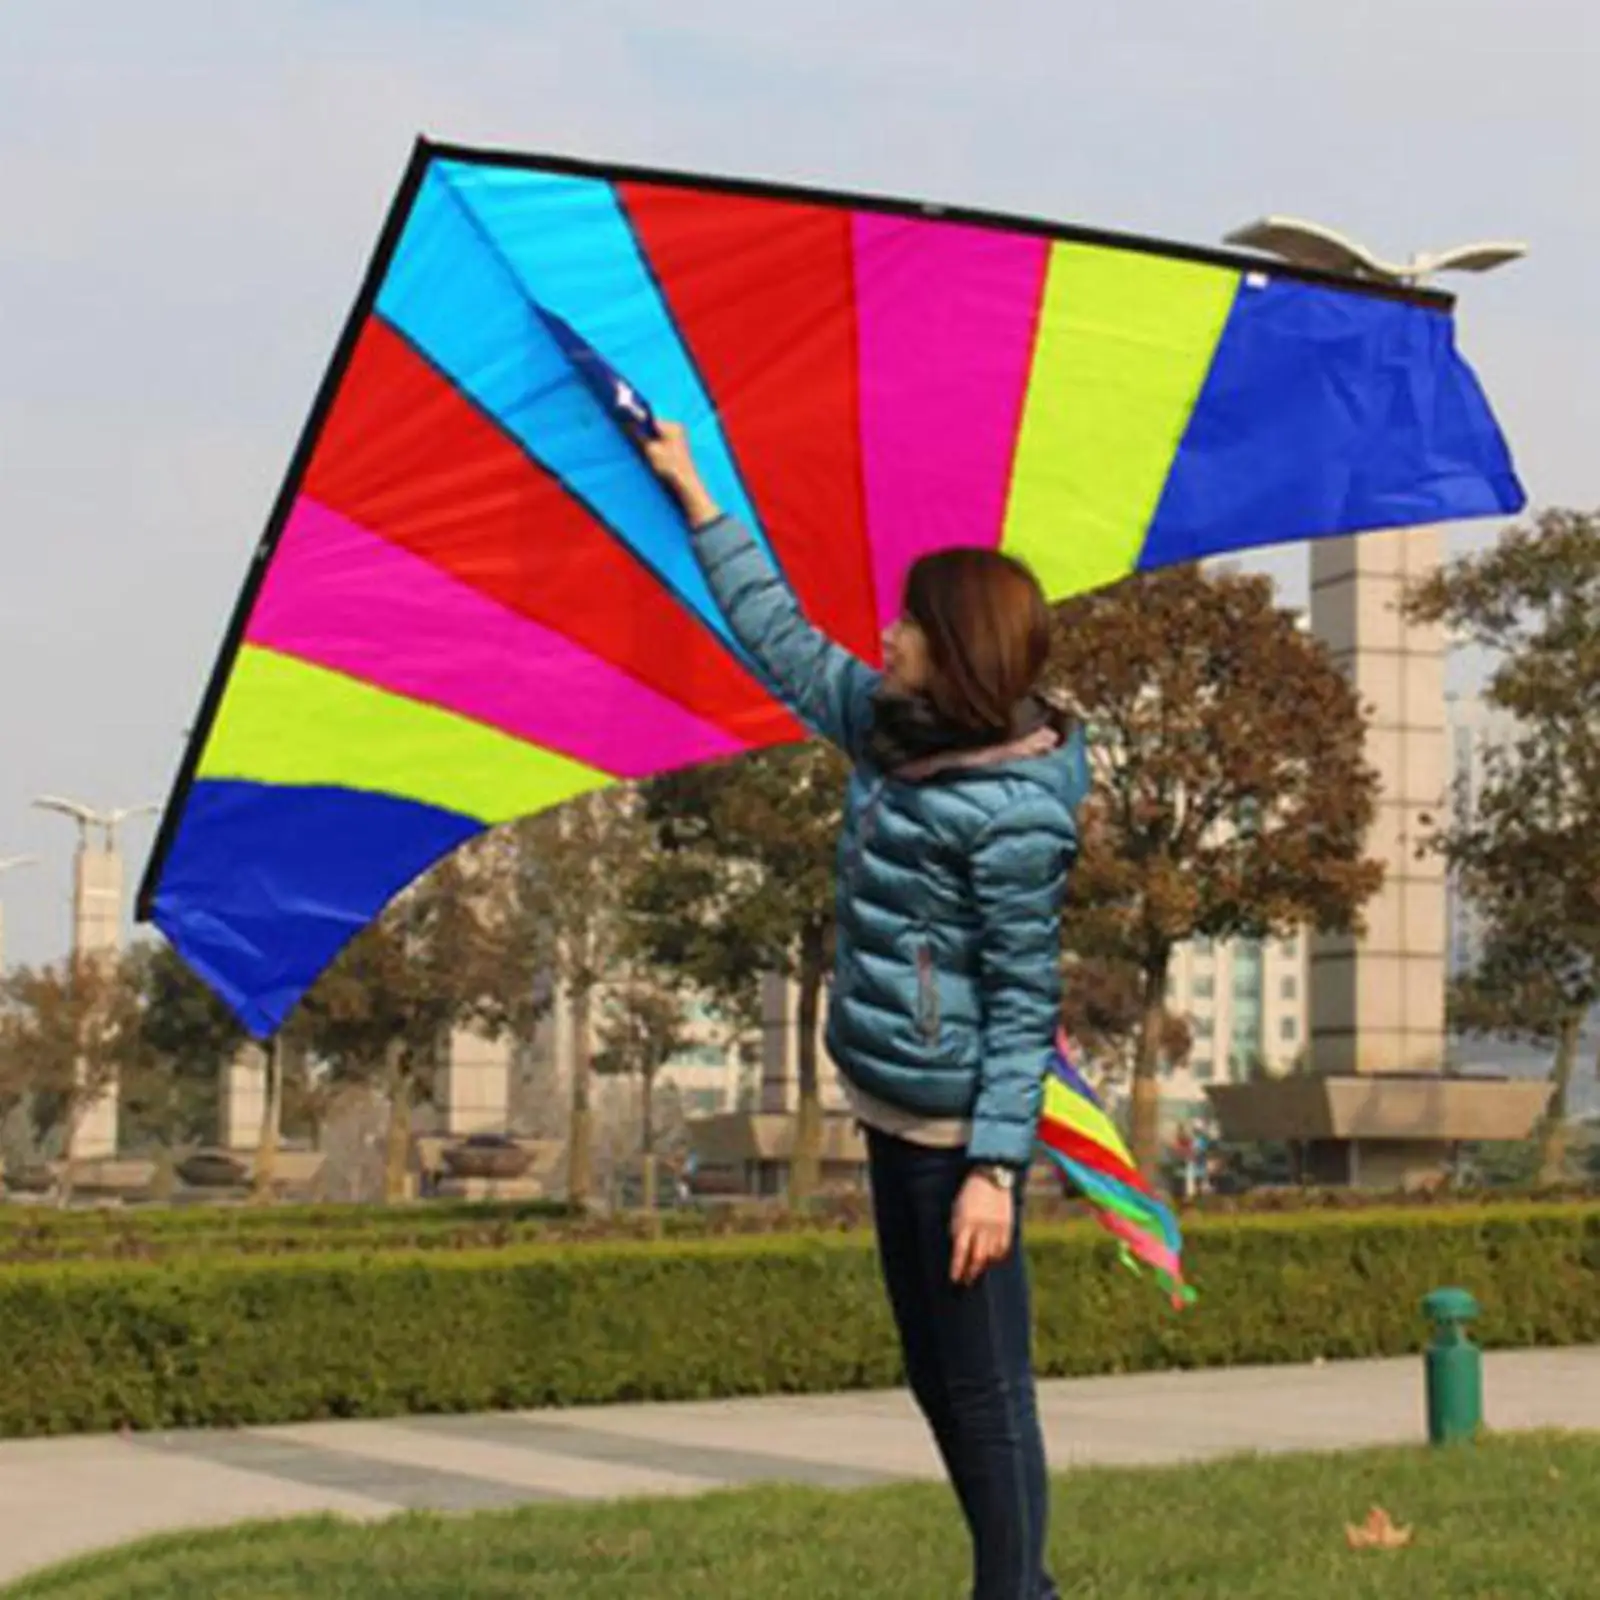 Rainbow Delta Kite Triangle Kite Easy Giant for Family Trips